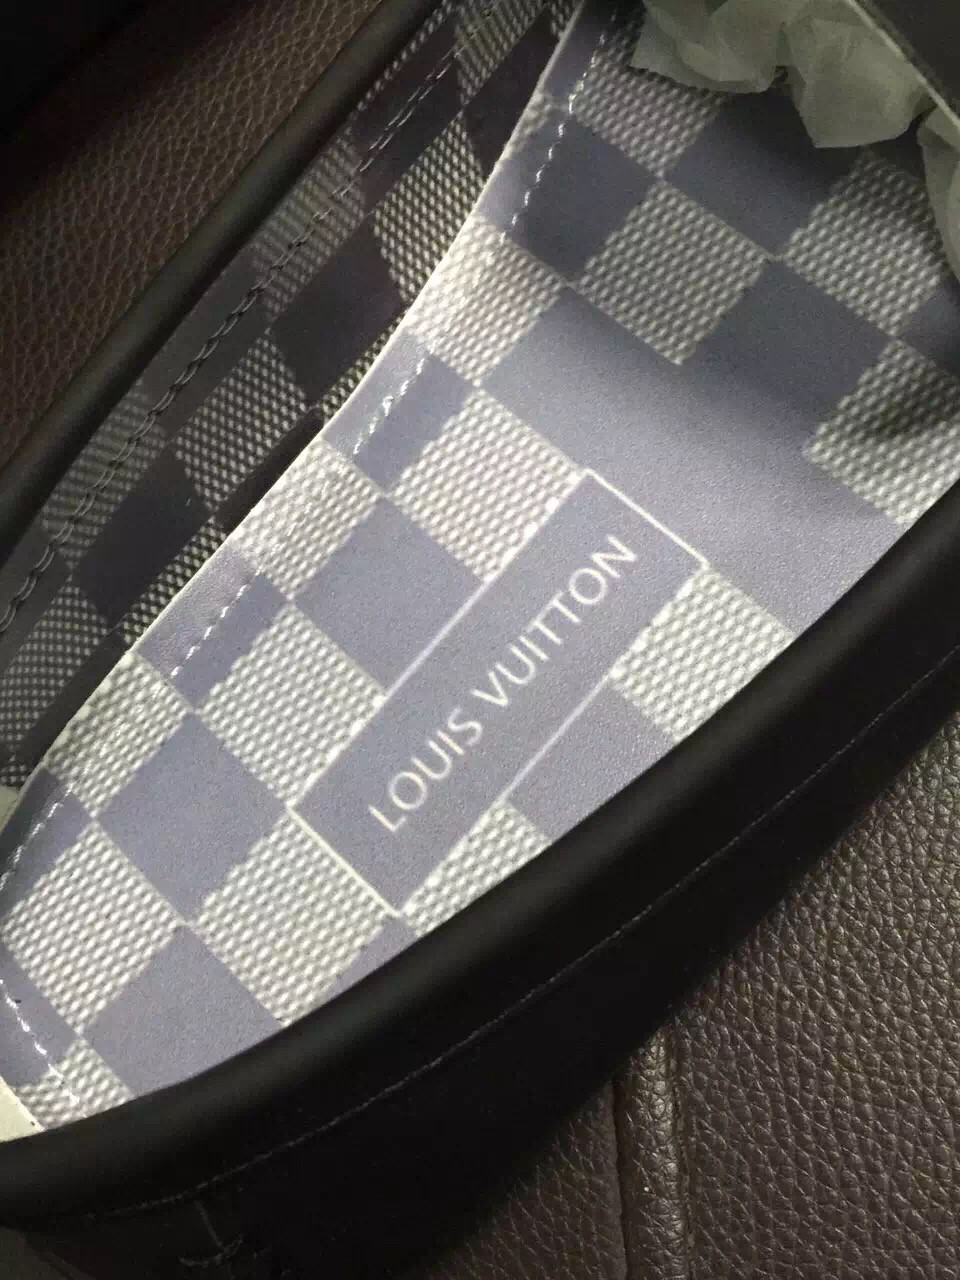 Giày lười nam Louis Vuitton siêu cấp - GNLV020